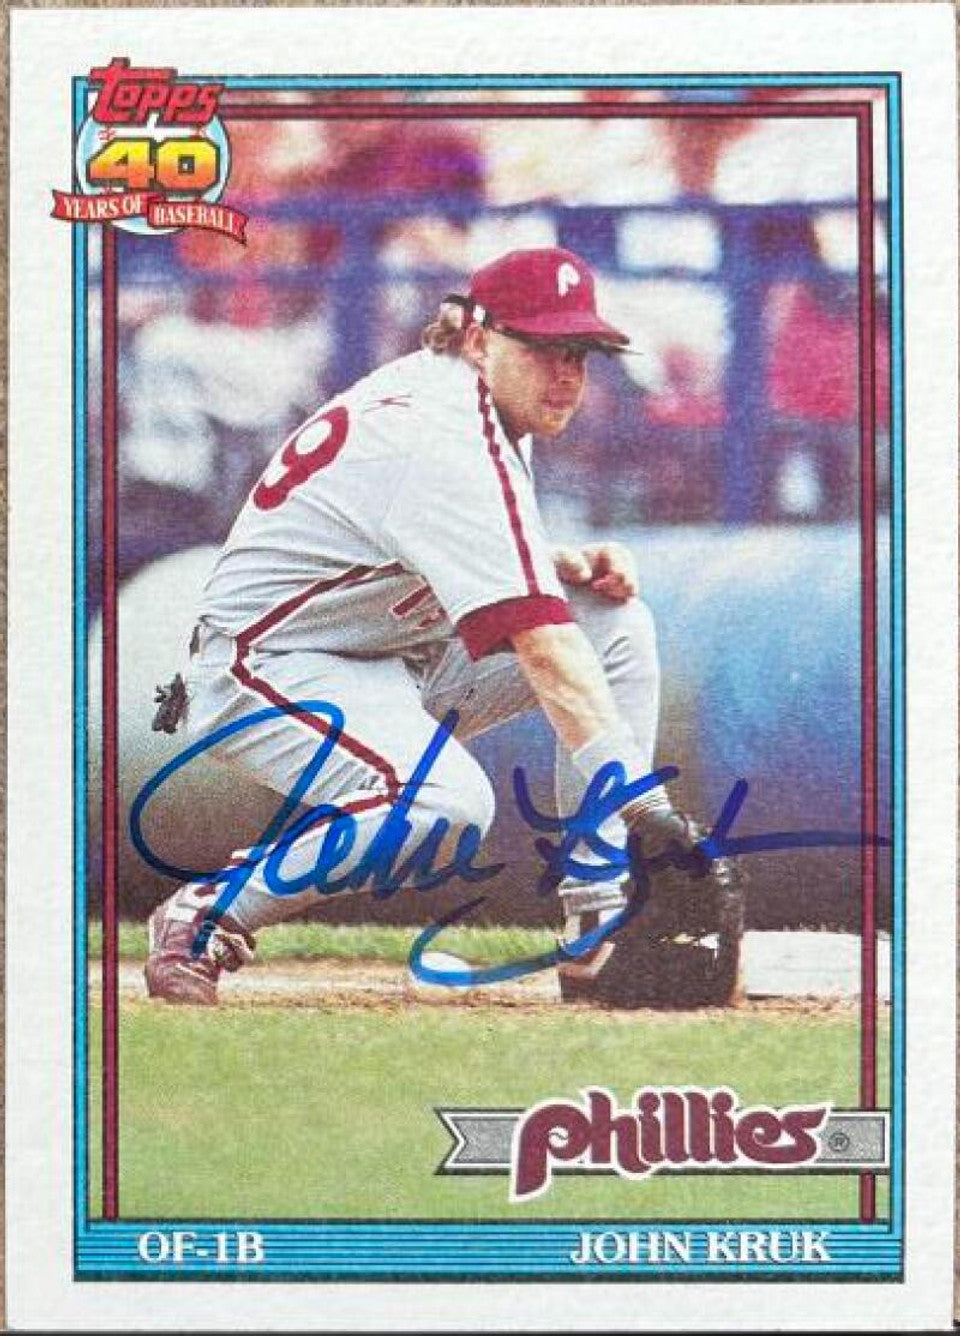 John Kruk Signed 1991 Topps Baseball Card - Philadelphia Phillies